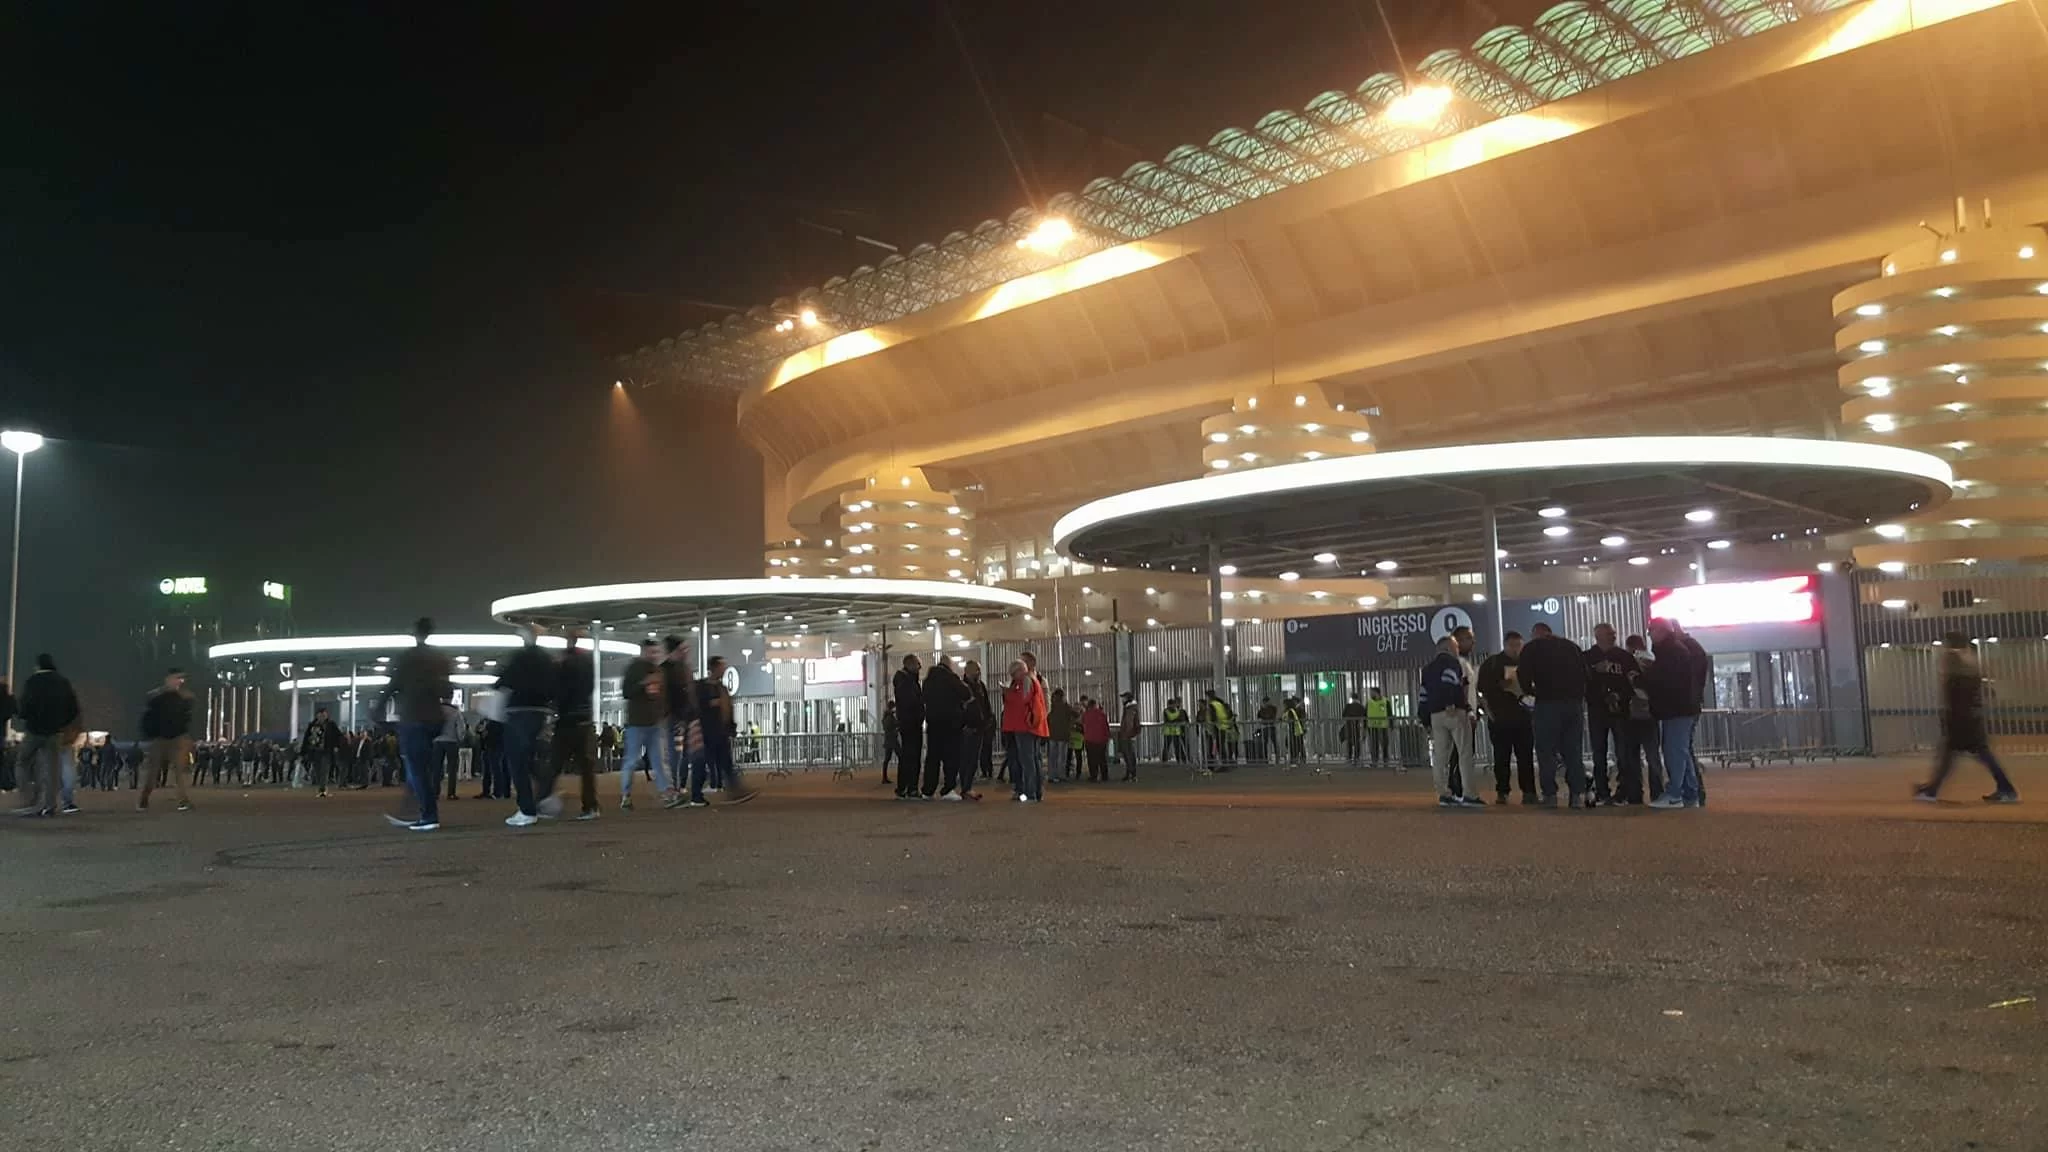 Milan-Atalanta, promozioni per Under 14 e Over 65: le info sui biglietti